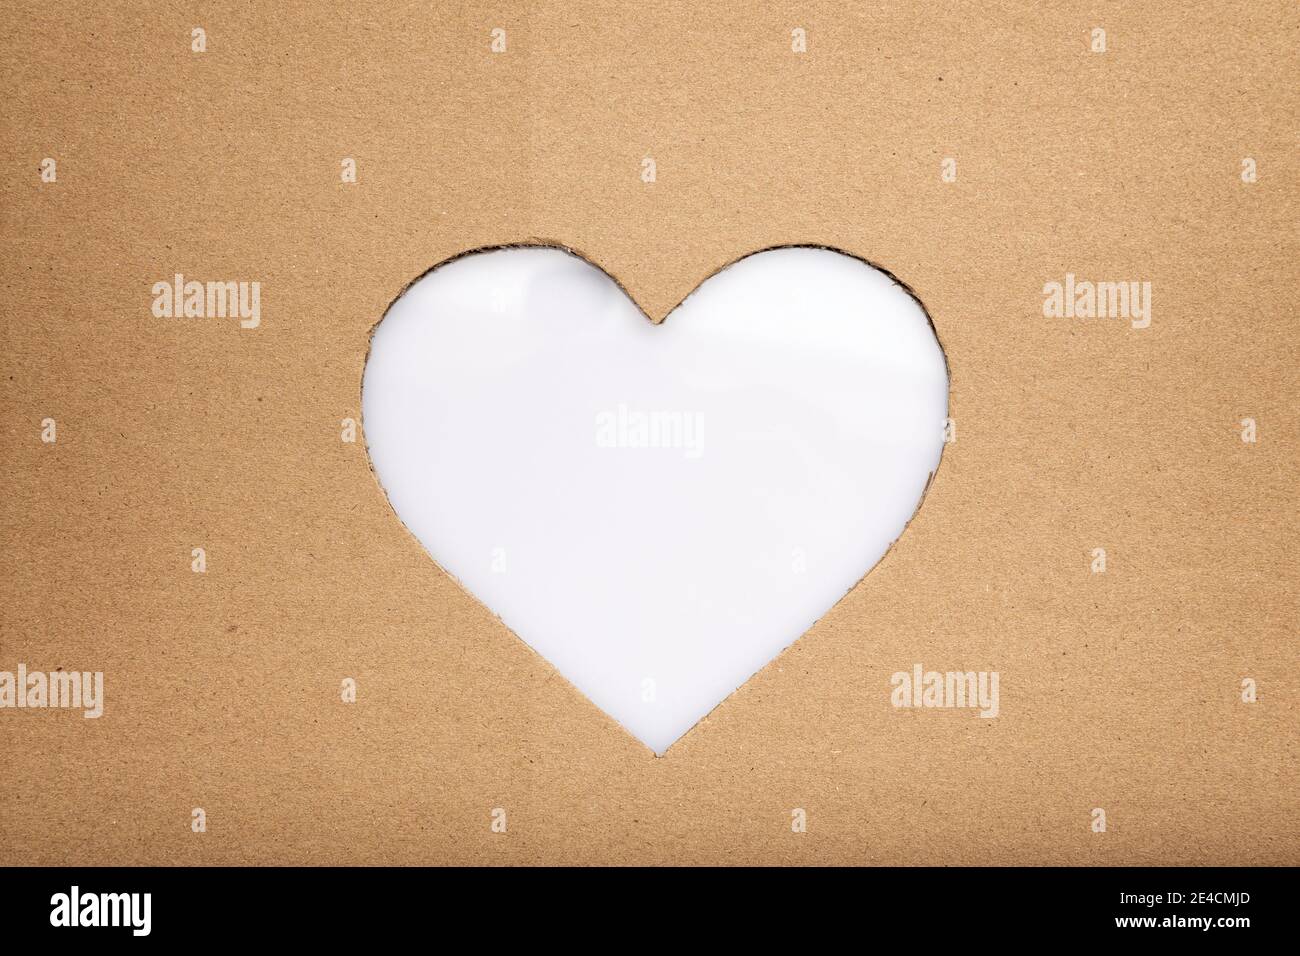 amor concepto imagen de forma de corazón hecho en corte de fondo de cartón con espacio de copia blanco Foto de stock